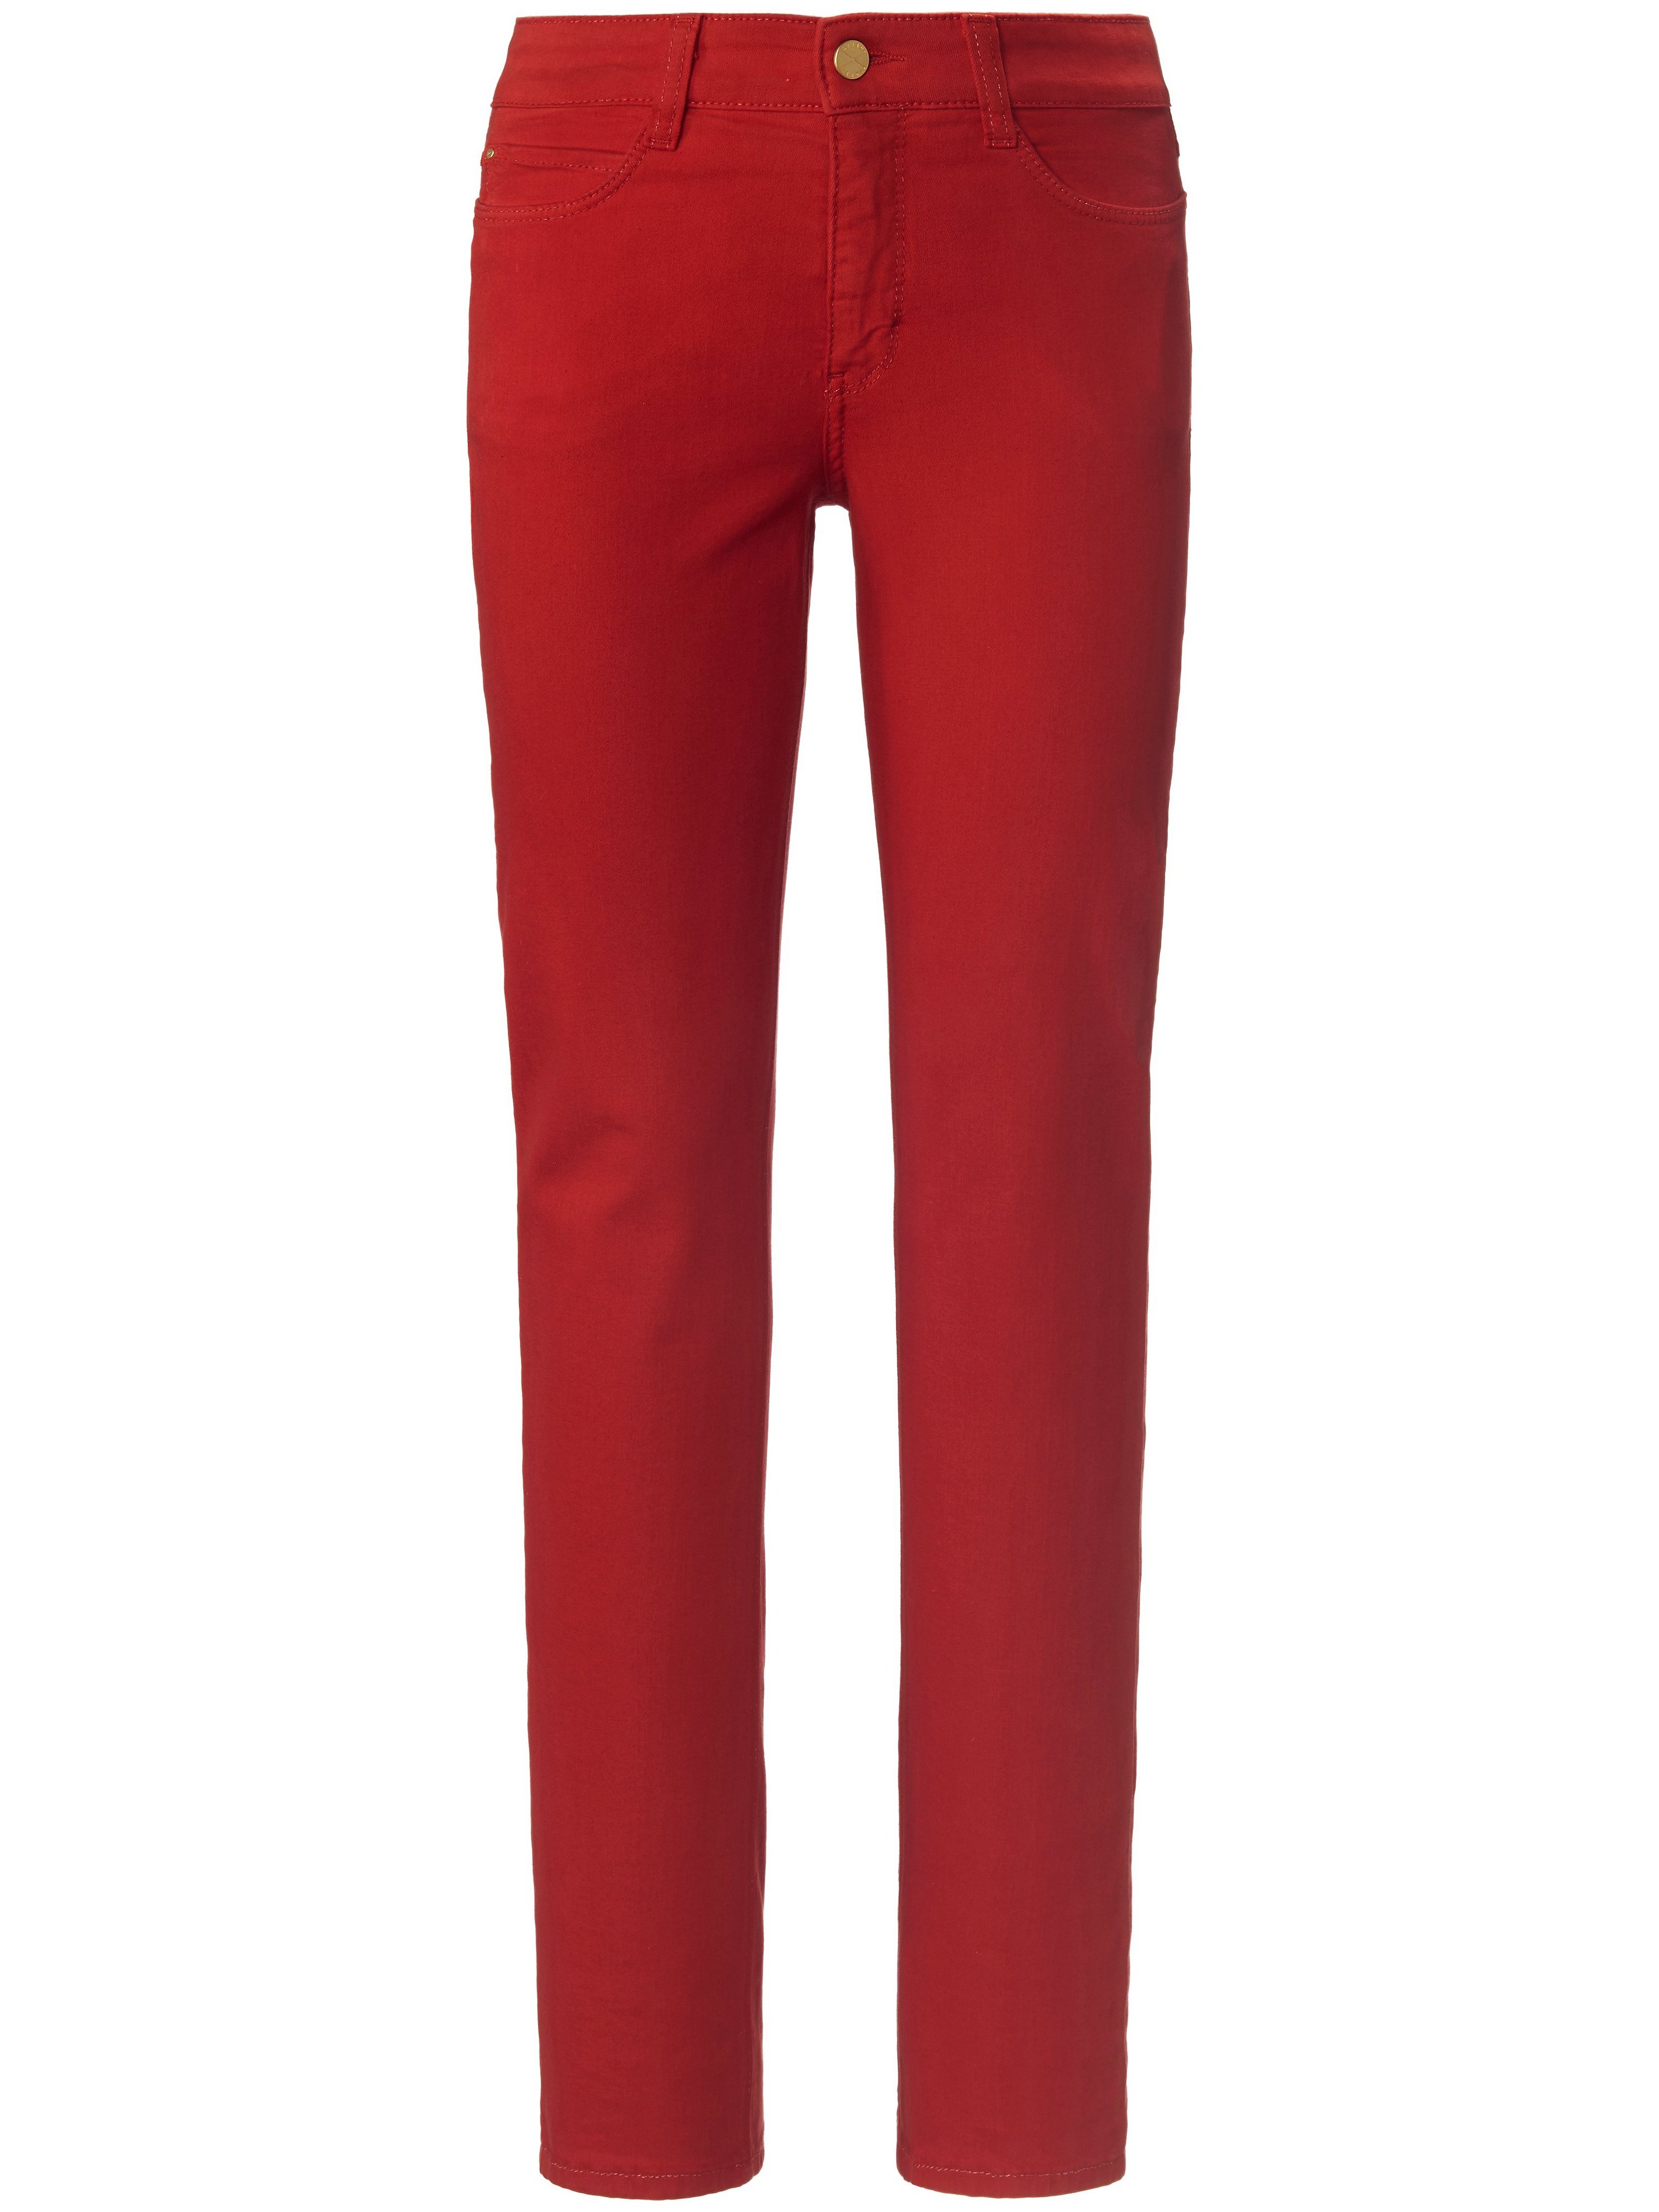 Le jean modèle Dream  Mac rouge taille 42